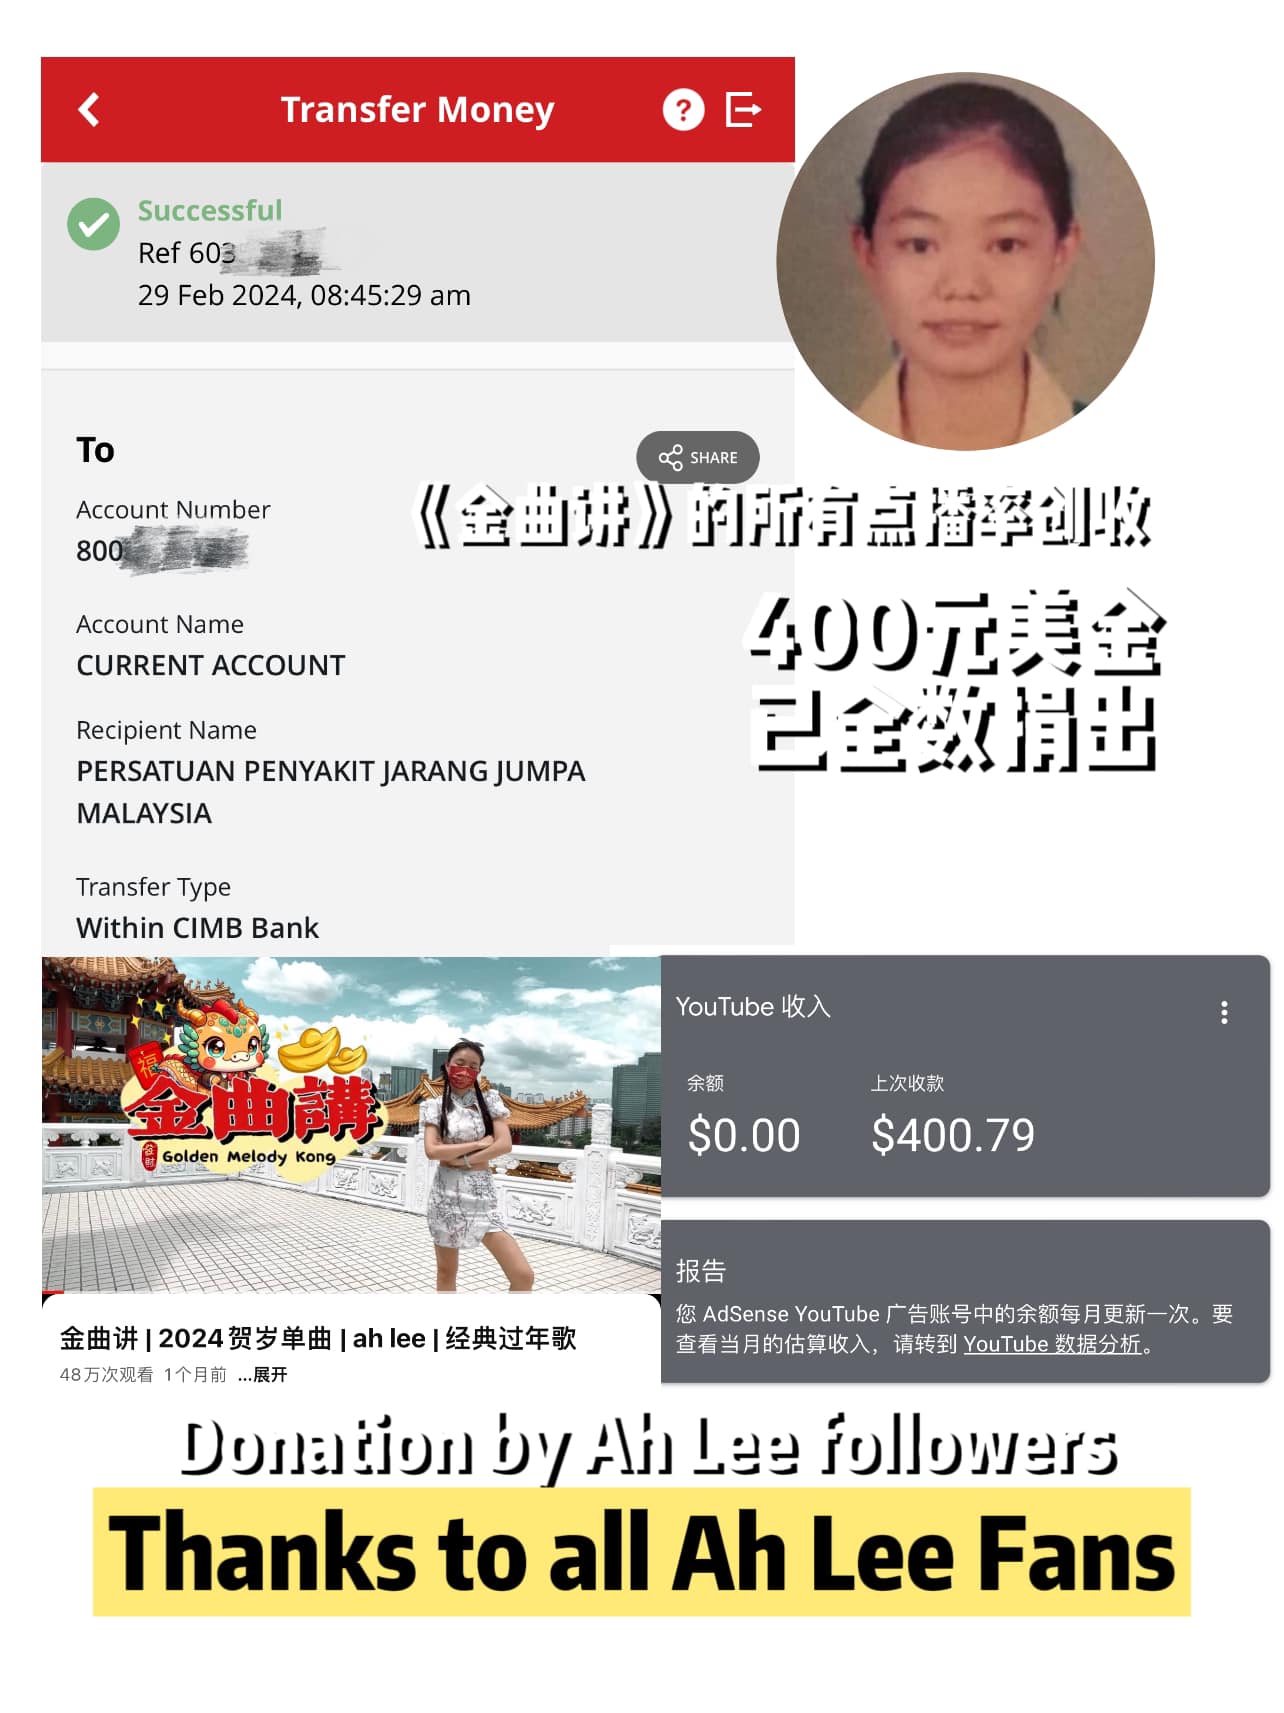 Ah Lee特别在面子书发文感谢粉丝支持，同时也宣布以粉丝的名义把获得的收益捐赠给马来西亚罕见疾病基金。